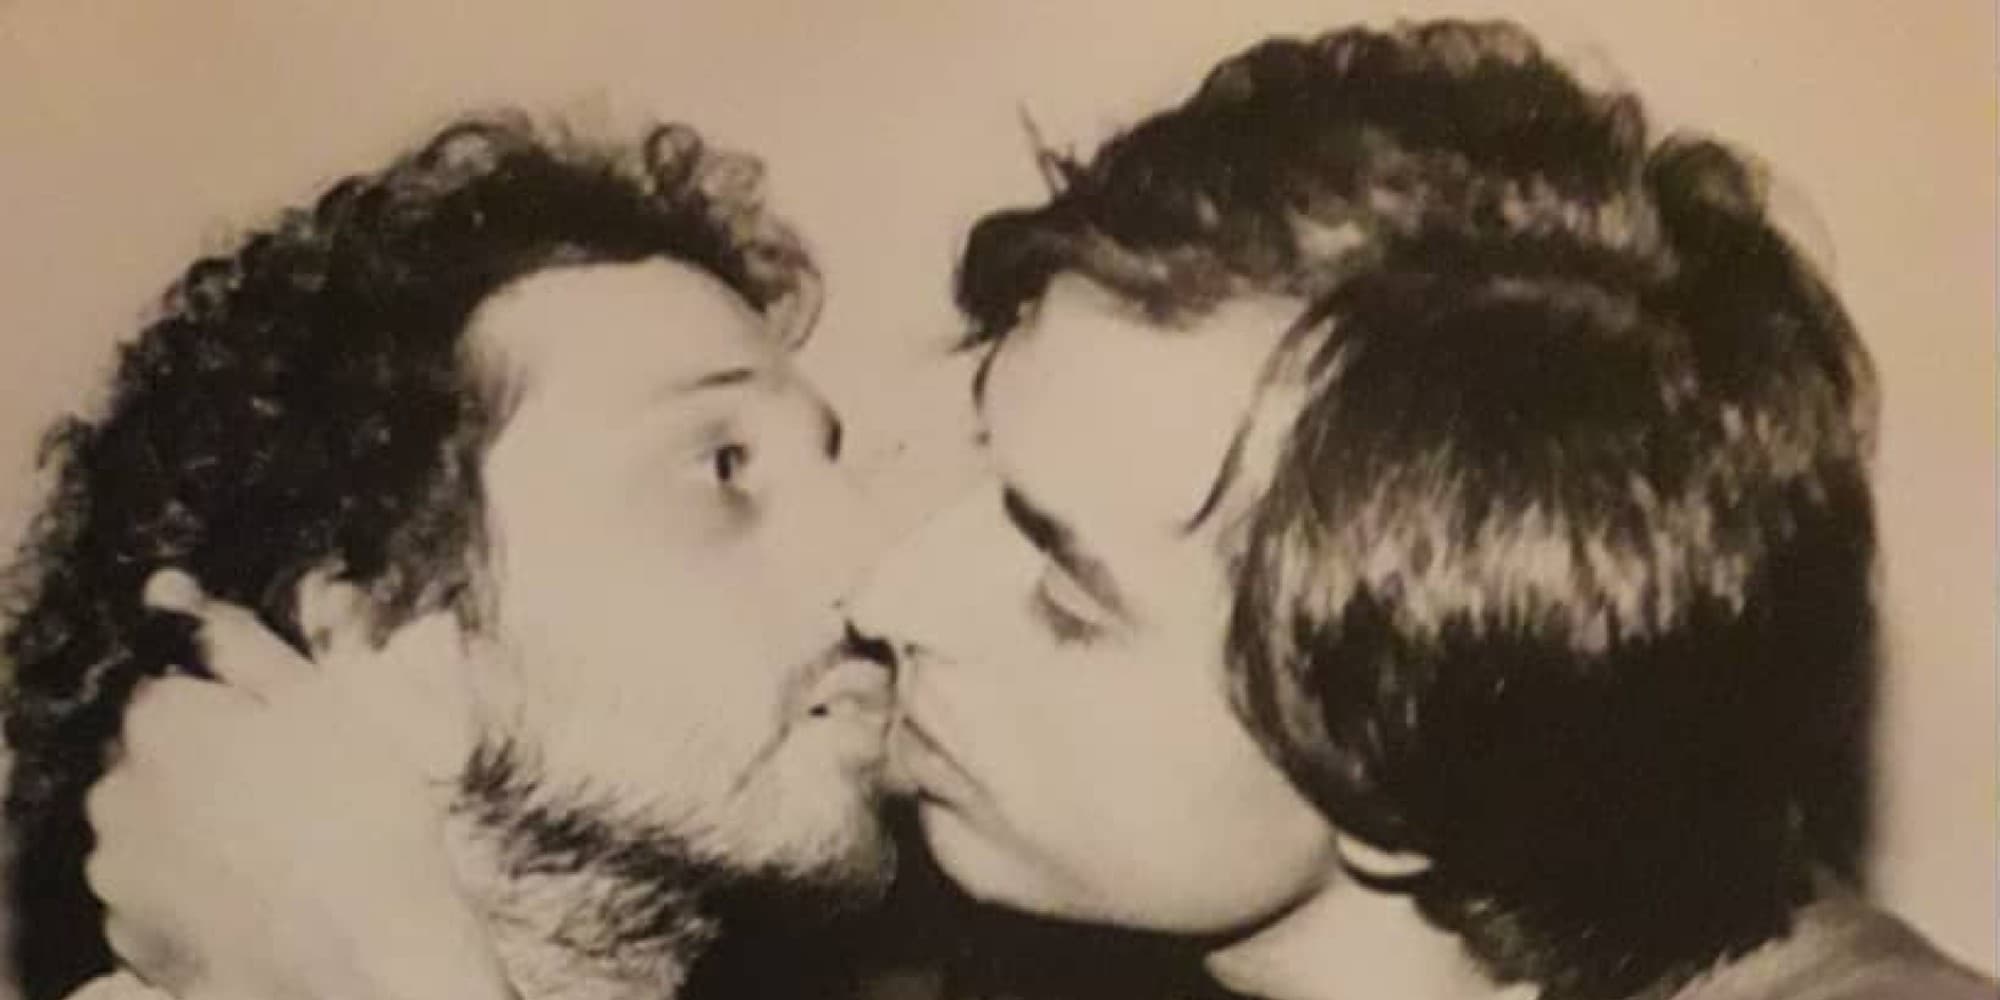 Ο Σπύρος Μπιμπίλας έδωσε ένα από τα πρώτα γκέι φιλιά στο ελληνικό θέατρο το 1981